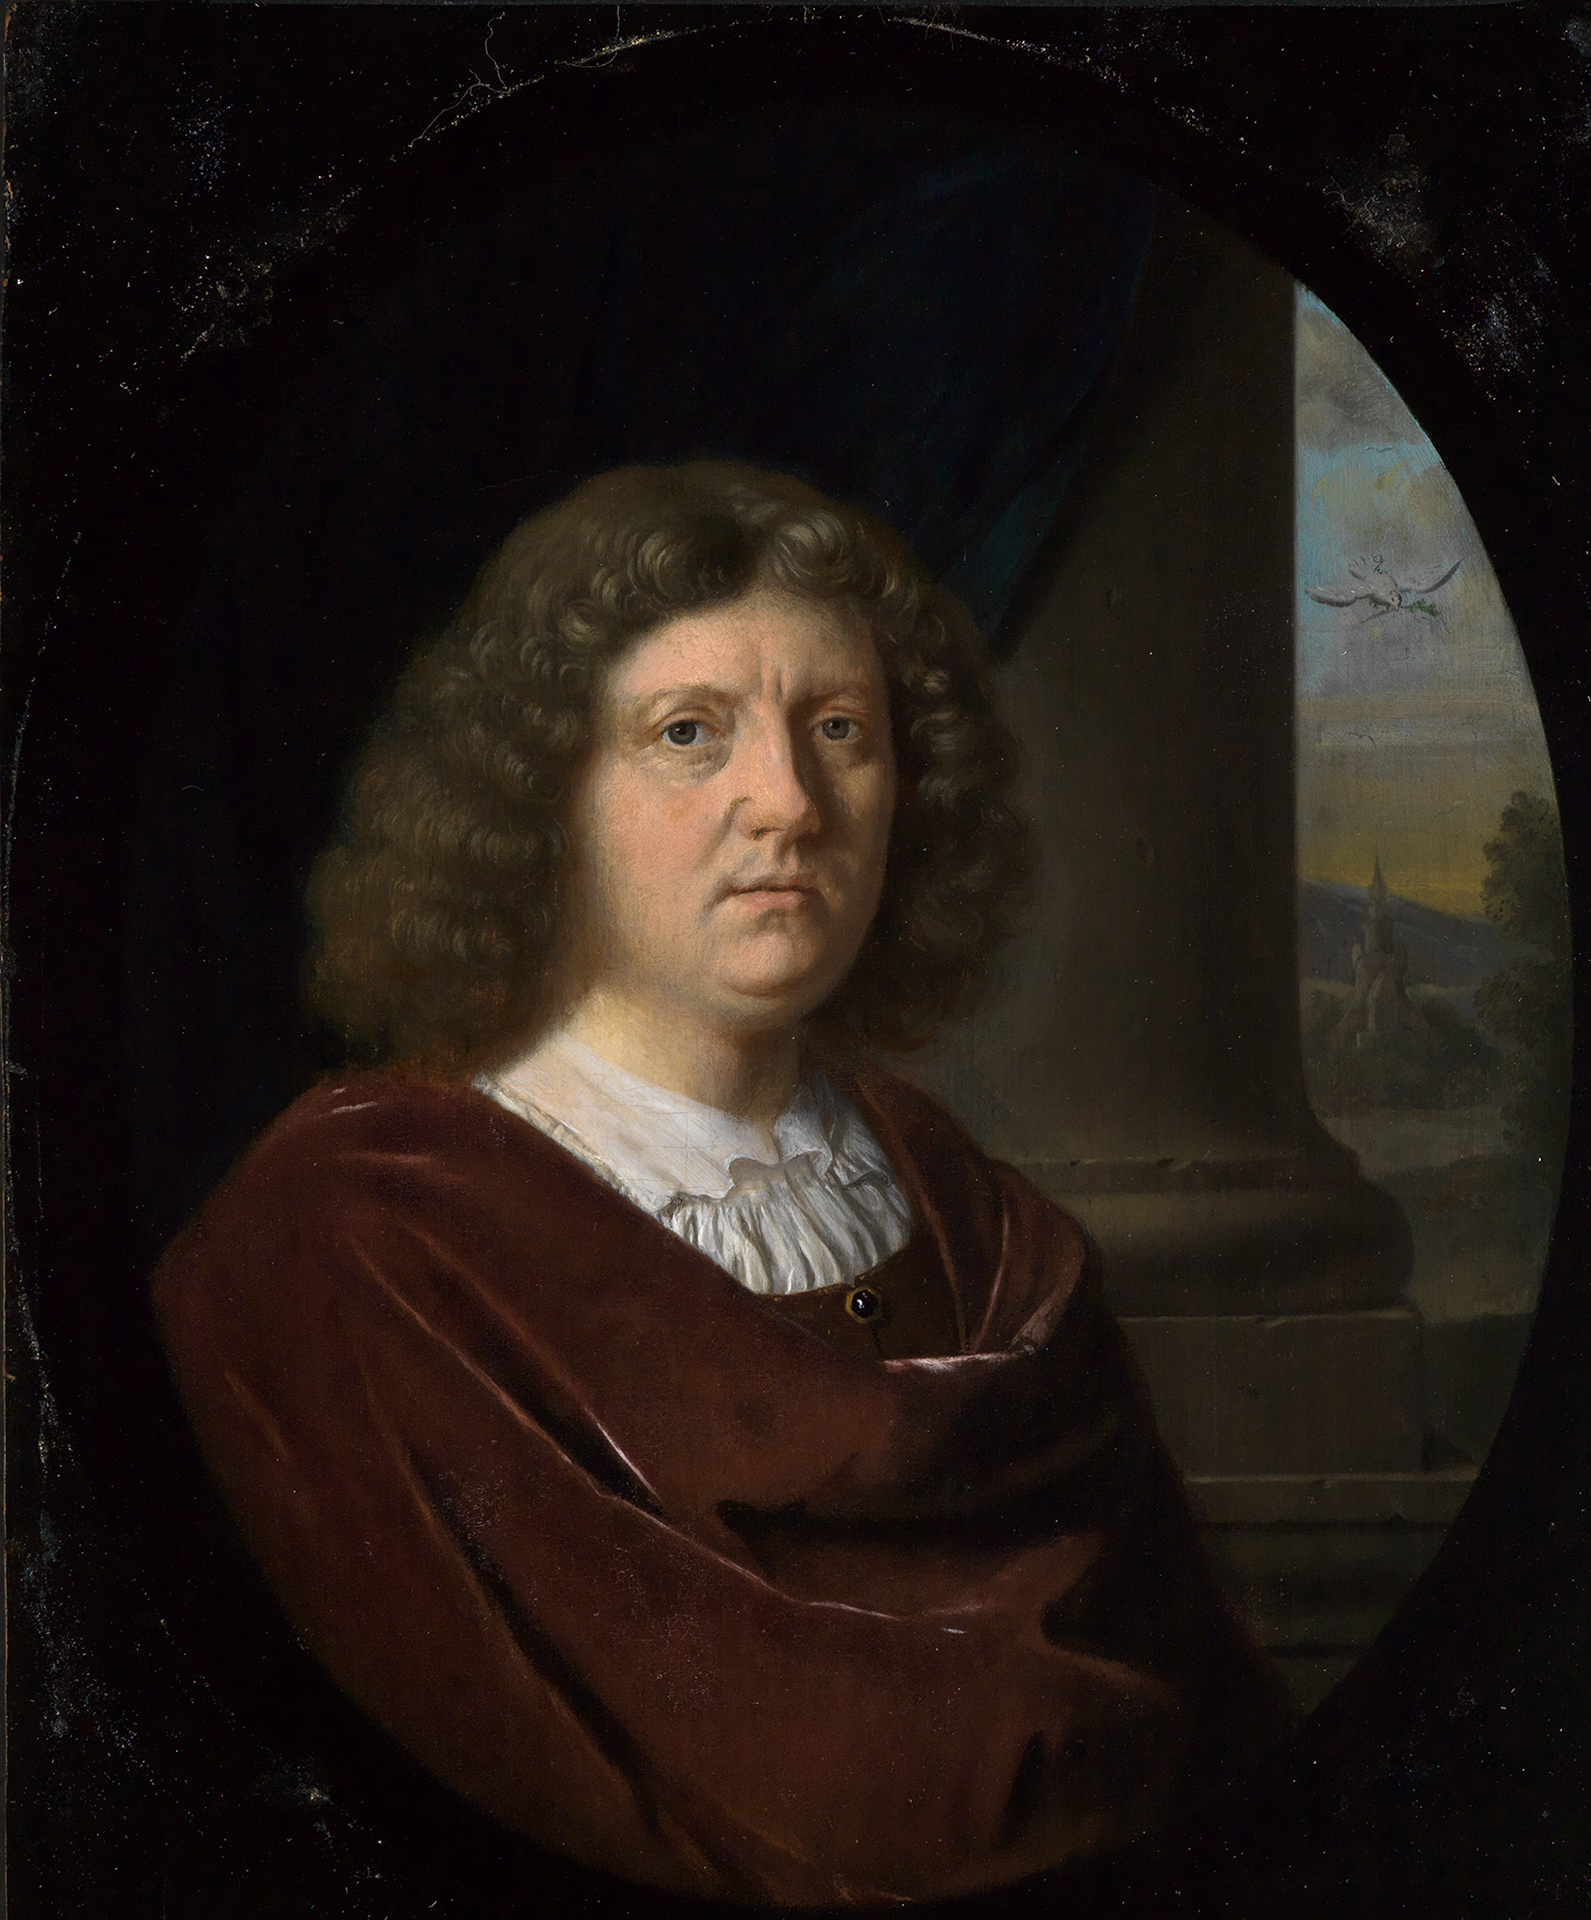 In einem ovalen Bildausschnitt das Porträt eines Mannes. Rundes Gesicht, der Blick aus dem Bild heraus. Schulterlange graubraune Locken. Roter Mantel über weißem Hemd.